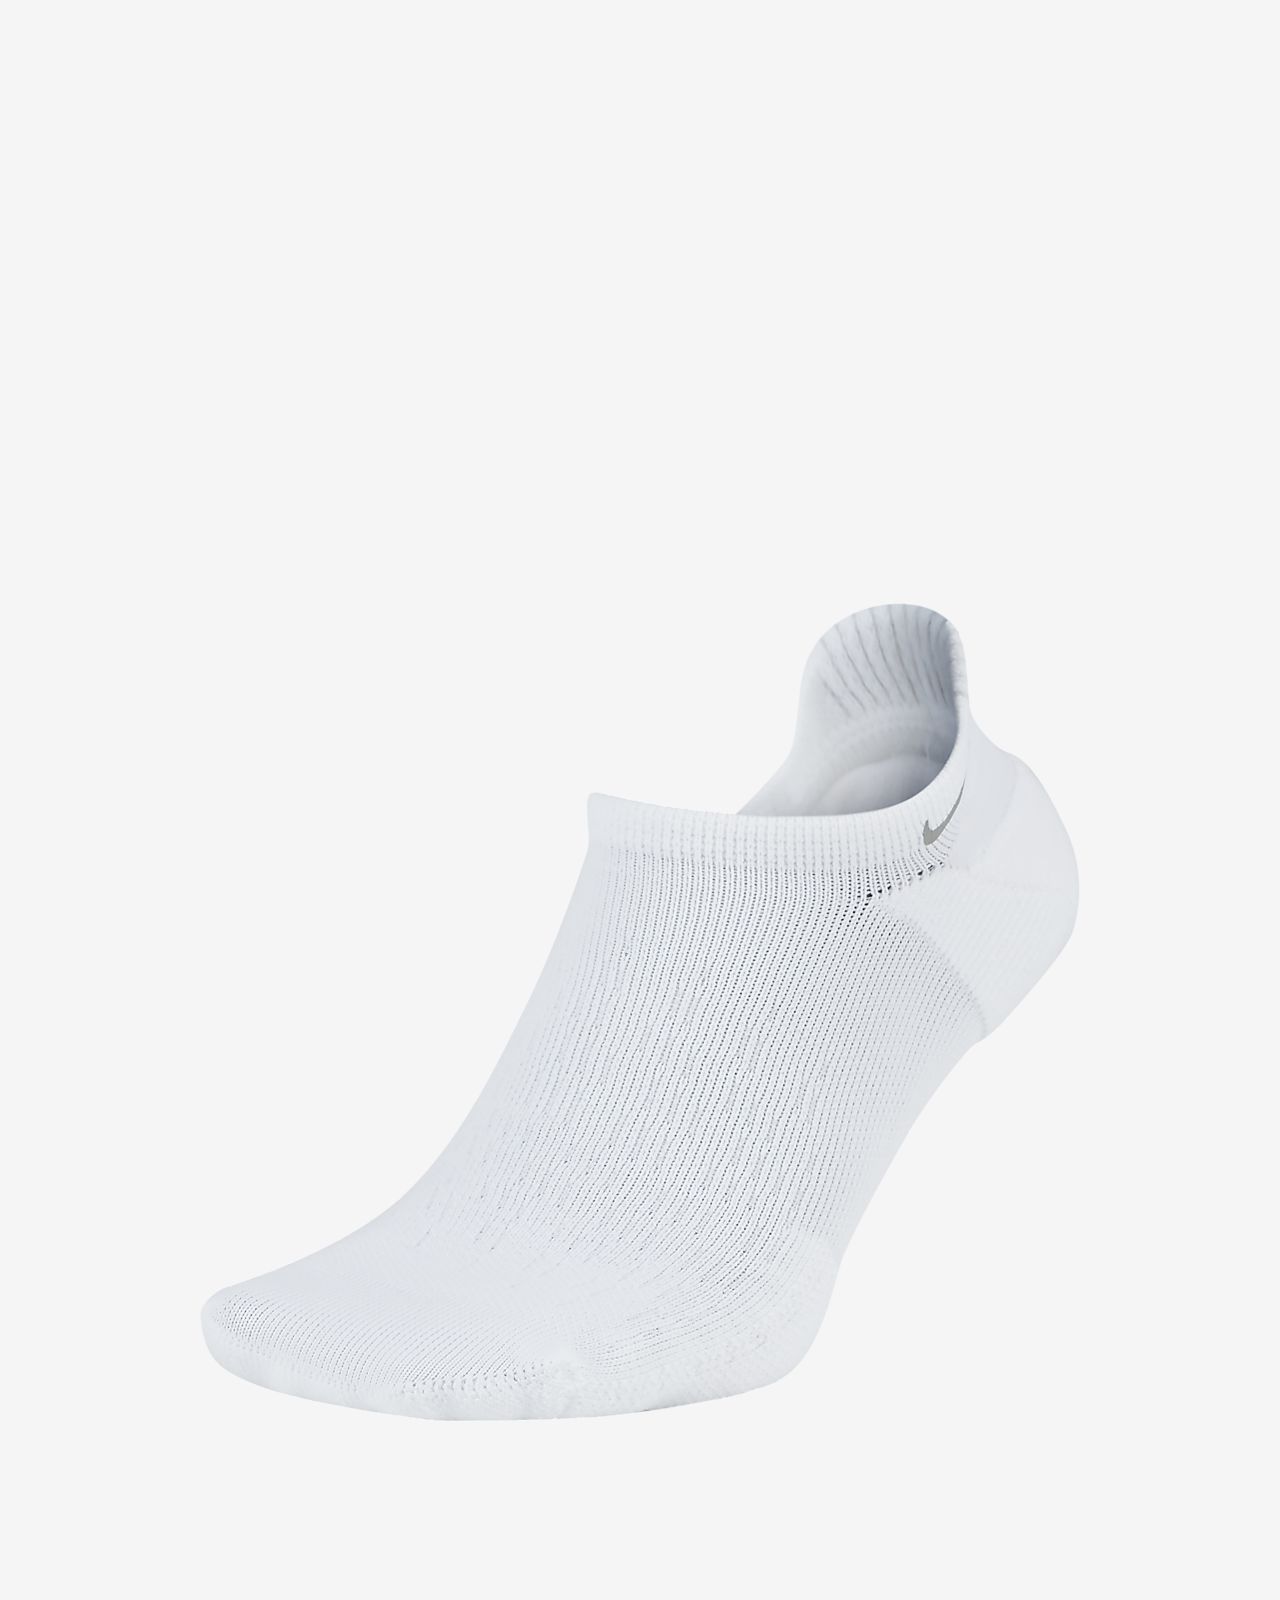 Running Socks. Nike FI